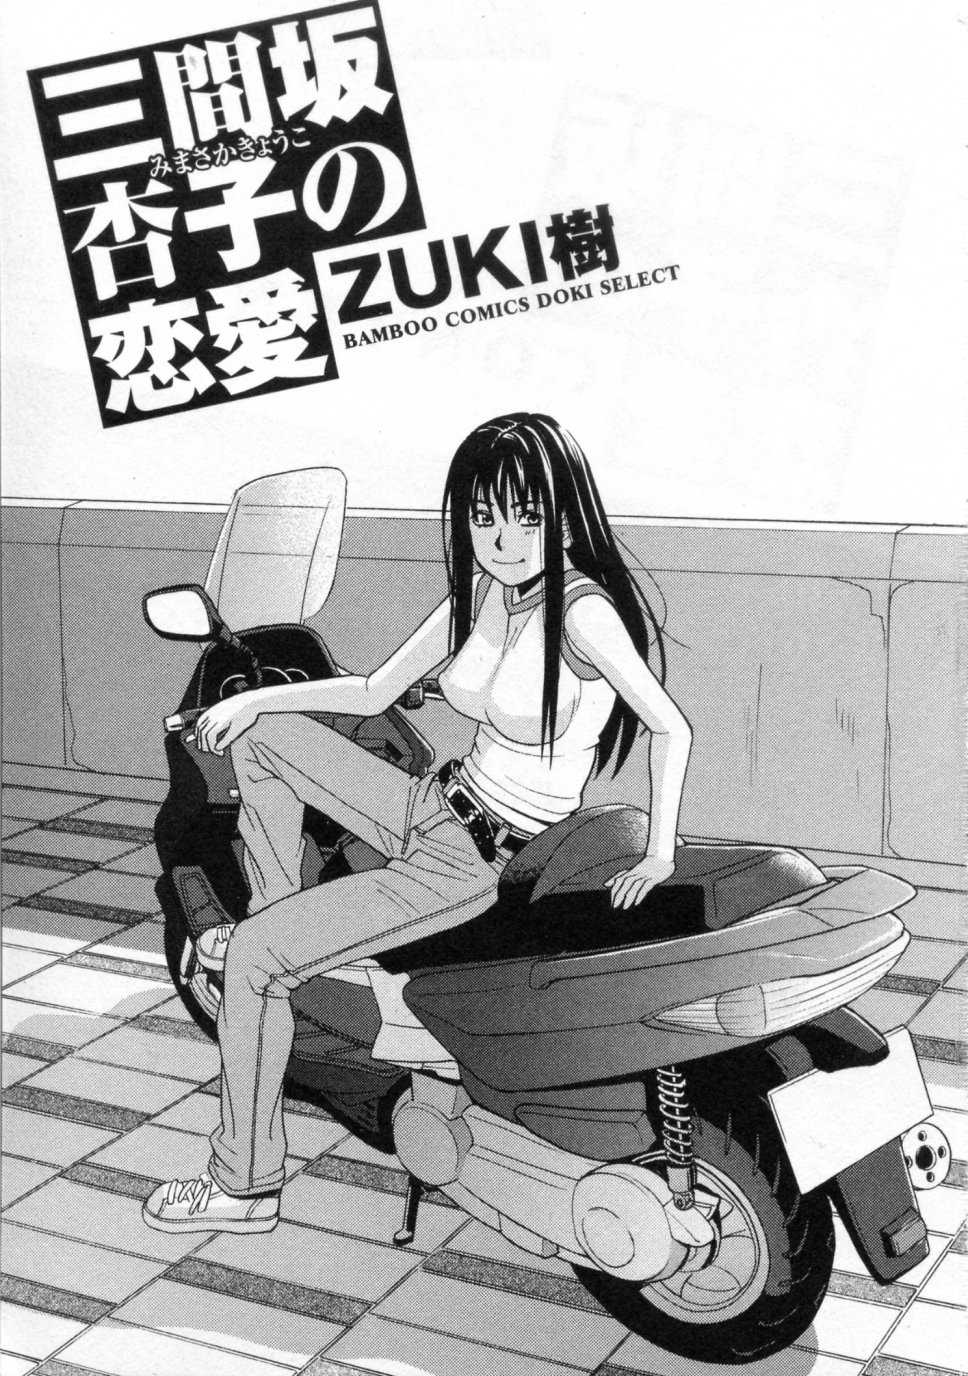 [ZukiKi] Mimasaka Kyoko No Renai [ZUKI樹] 三間坂杏子の恋愛